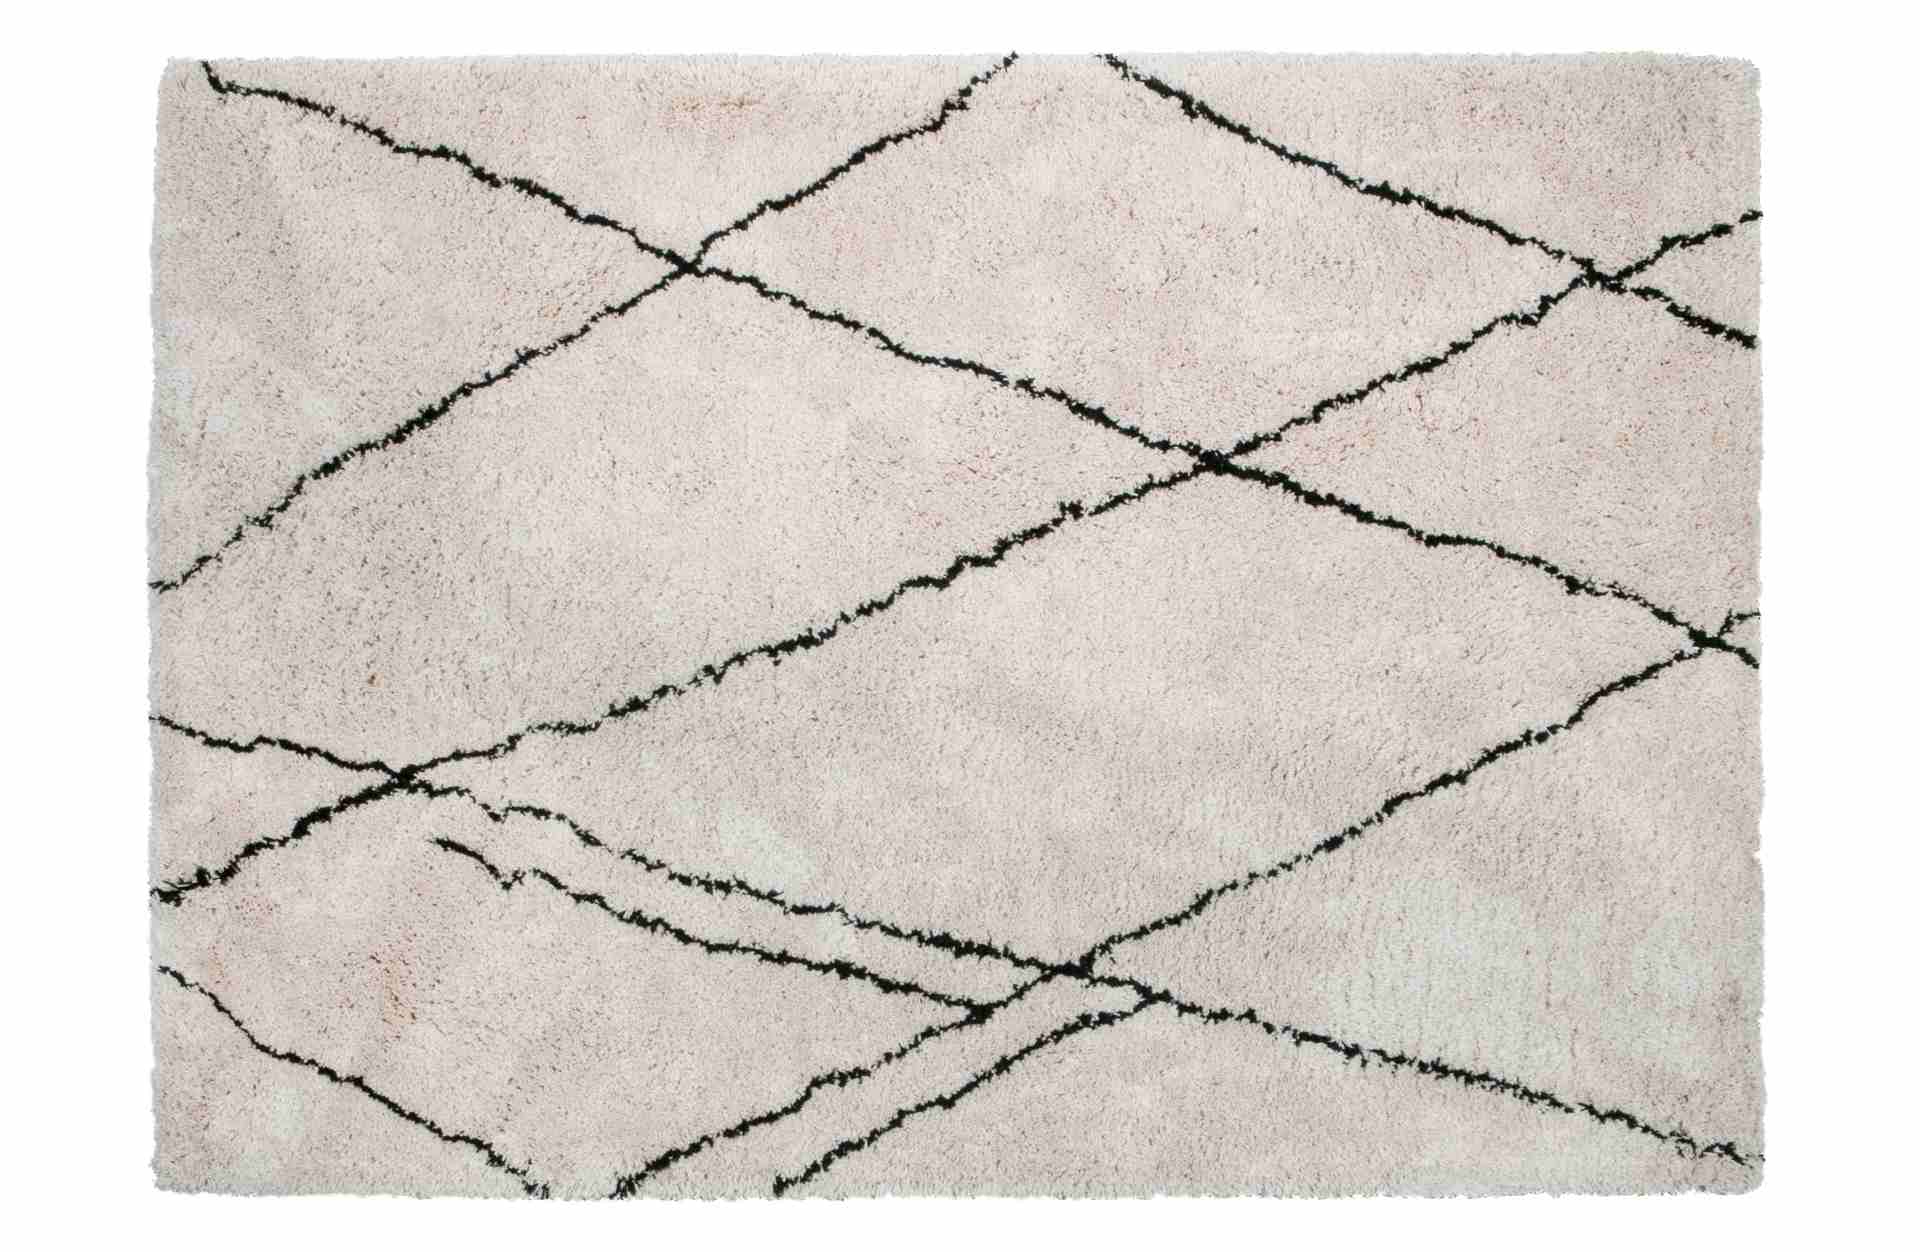 Der Teppich Cleo überzeugt mit seinem klassischen Design. Gefertigt wurde er aus einem Mix von Kunststoff und Baumwolle, welche einen weißen Farbton besitzen. Der Teppich besitzt eine Größe von 200x300 cm.